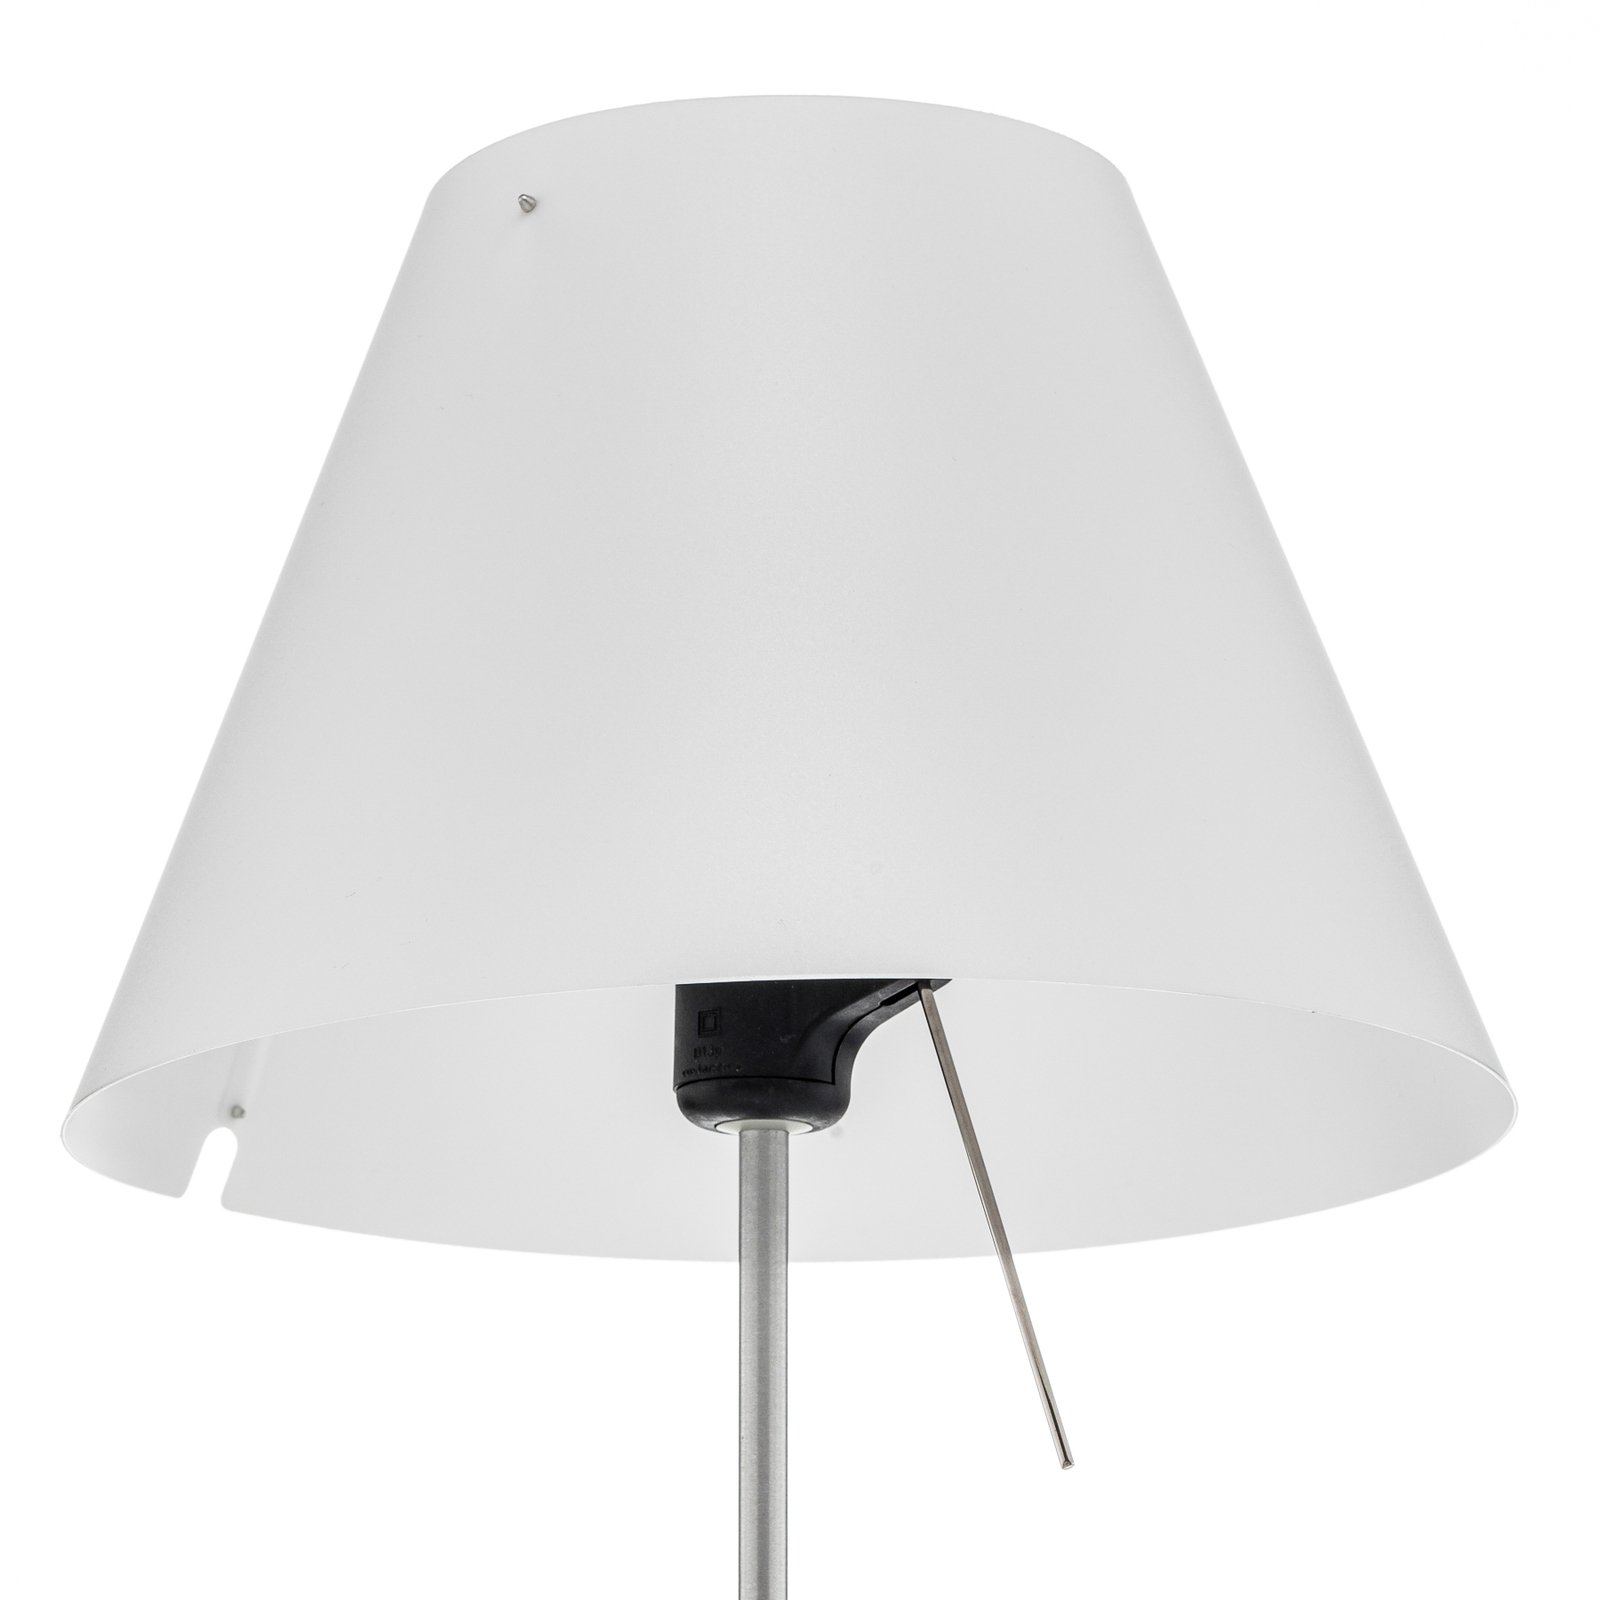 Luceplan Costanzina stolní lampa hliník, bílá